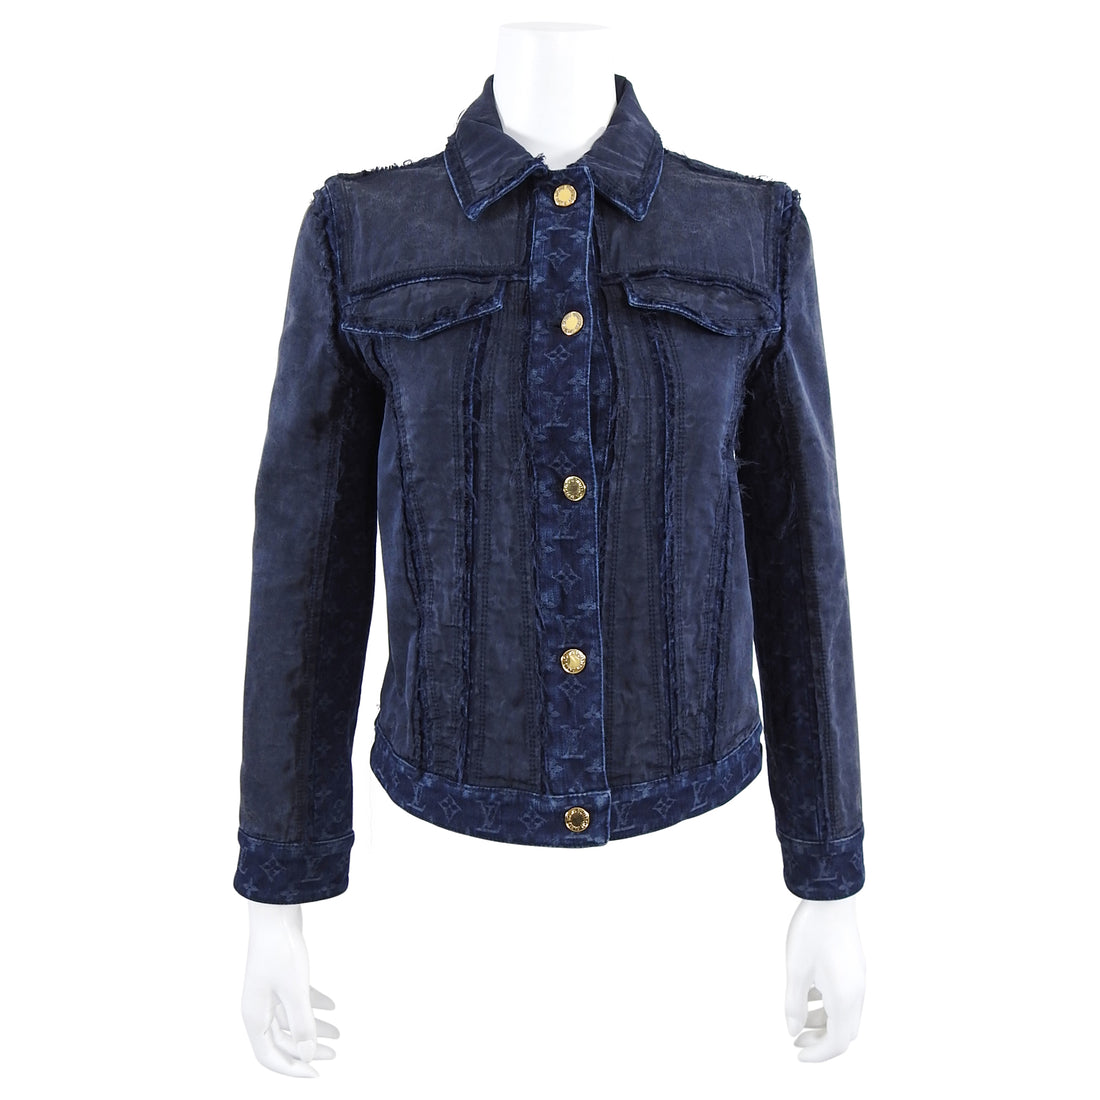 Louis Vuitton - Blue Jeans Jacket 38